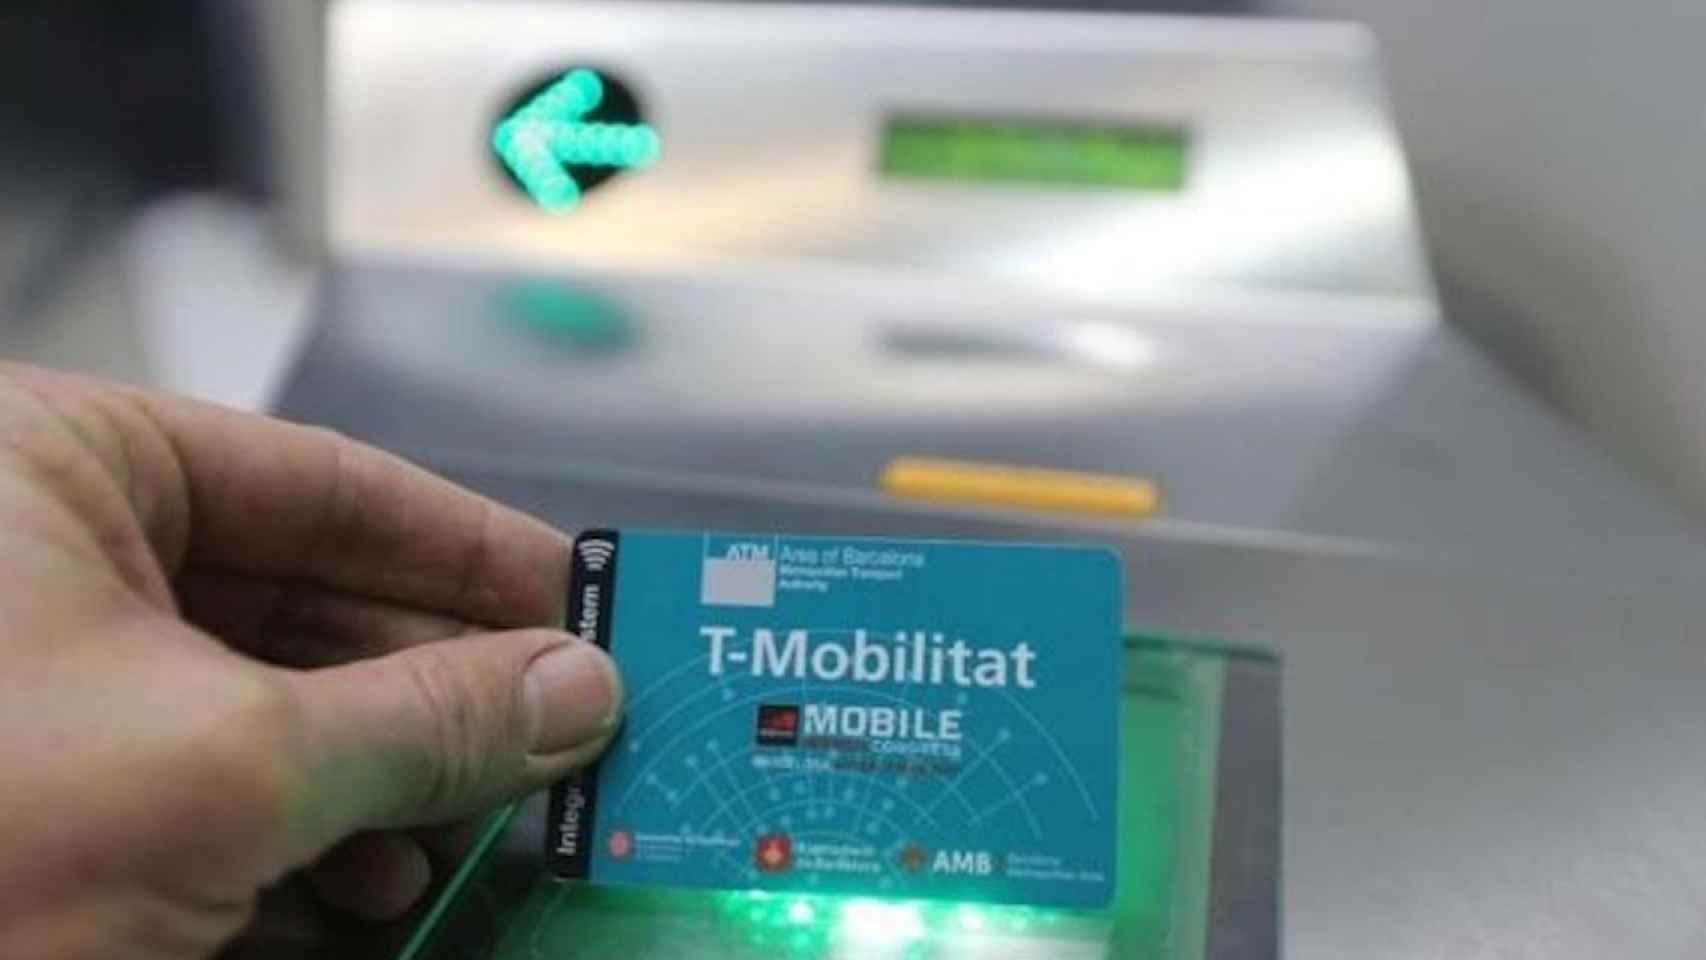 Tarjeta T-Mobilitat del Mobile / ARCHIVO